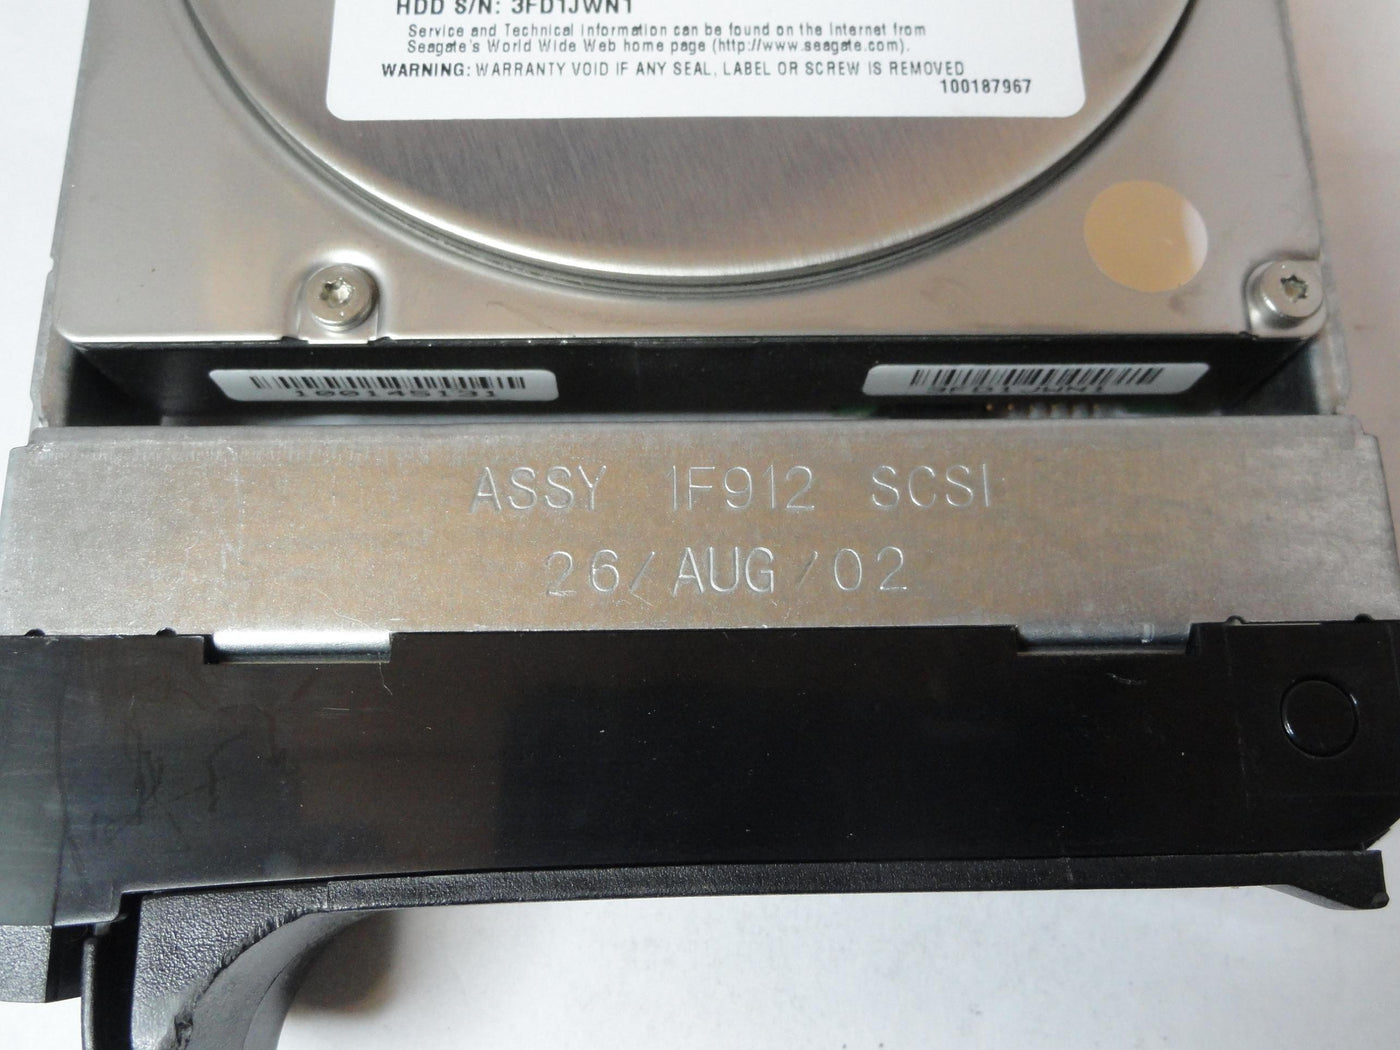 PR21891_9T9001-039_Seagate Dell 36GB SCSI 80 Pin 10Krpm 3.5in HDD - Image3